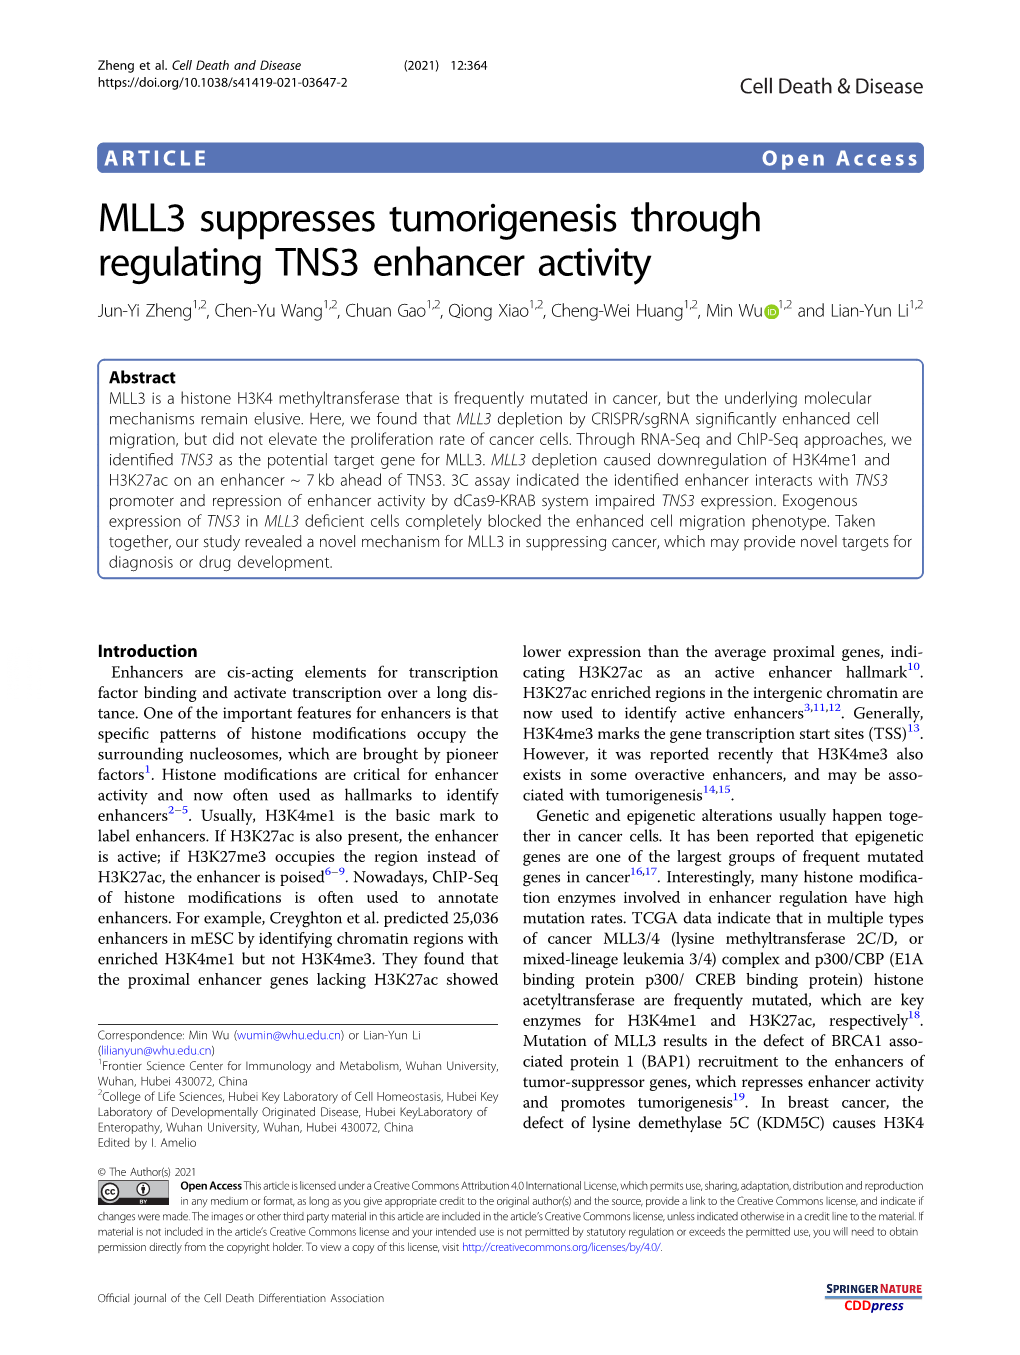 MLL3 Suppresses Tumorigenesis Through Regulating TNS3 Enhancer Activity